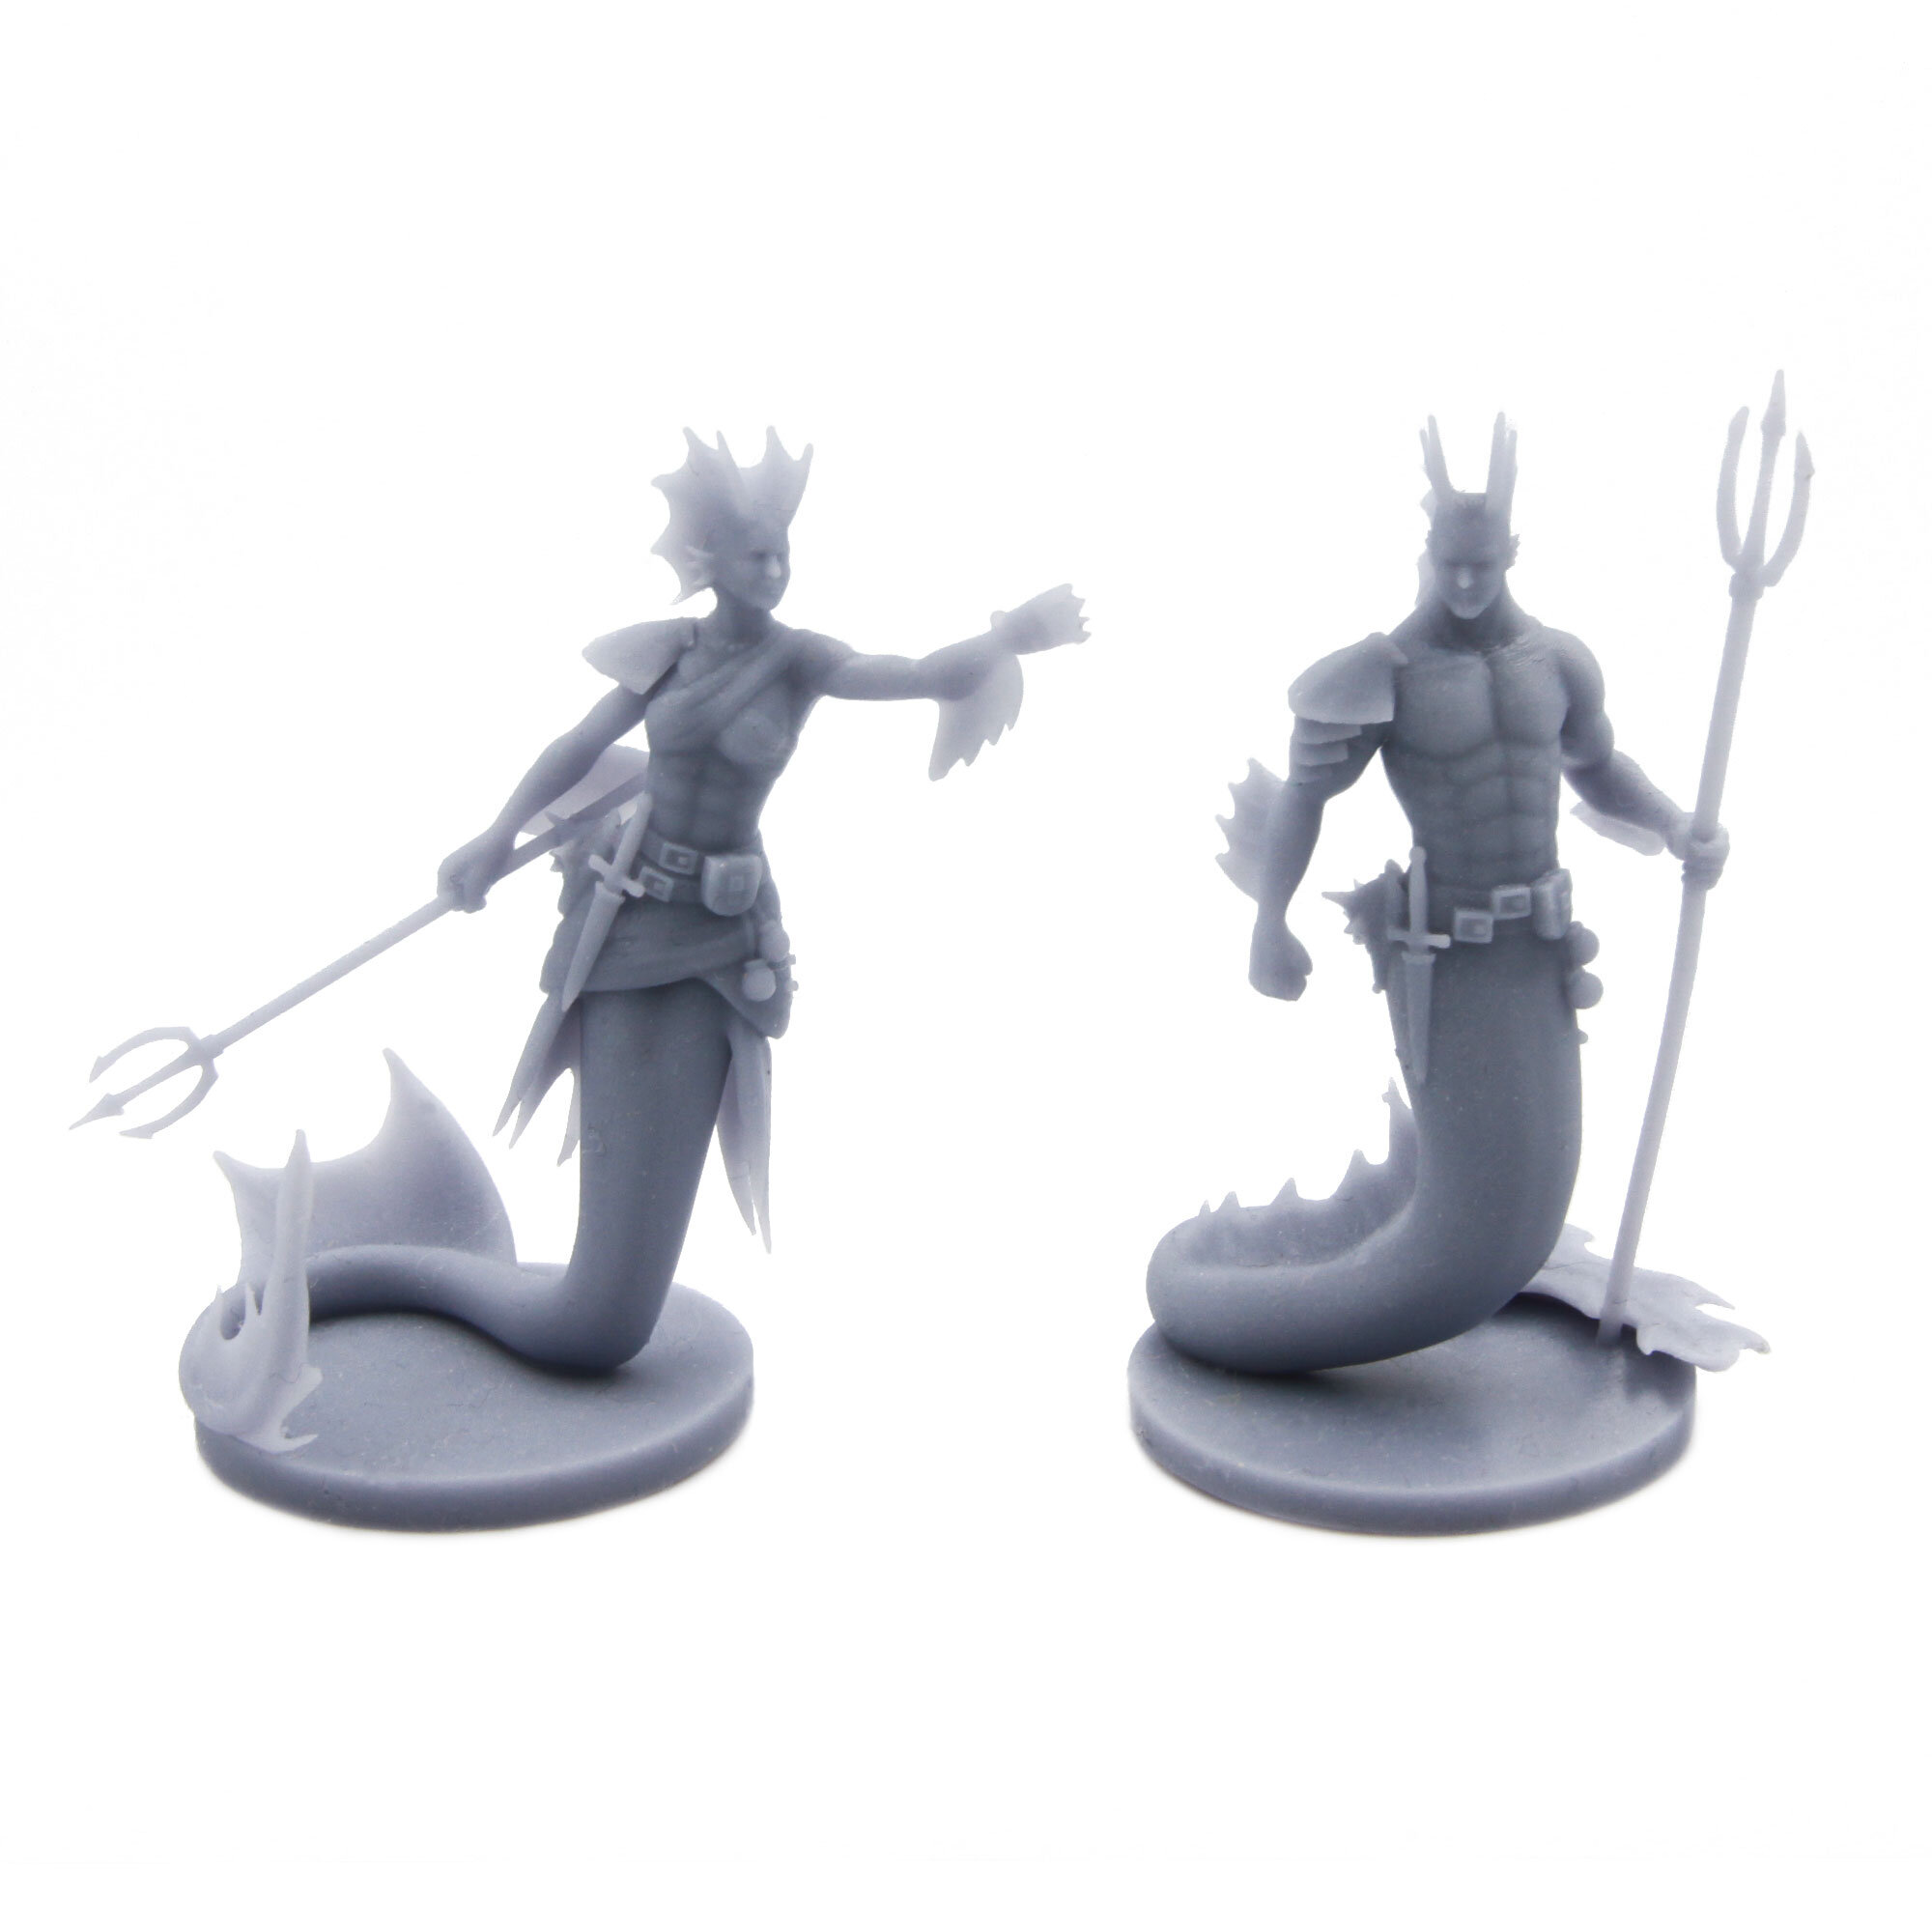 Sahuagin set | 2 Miniature Set for your D&D Pirate campaign